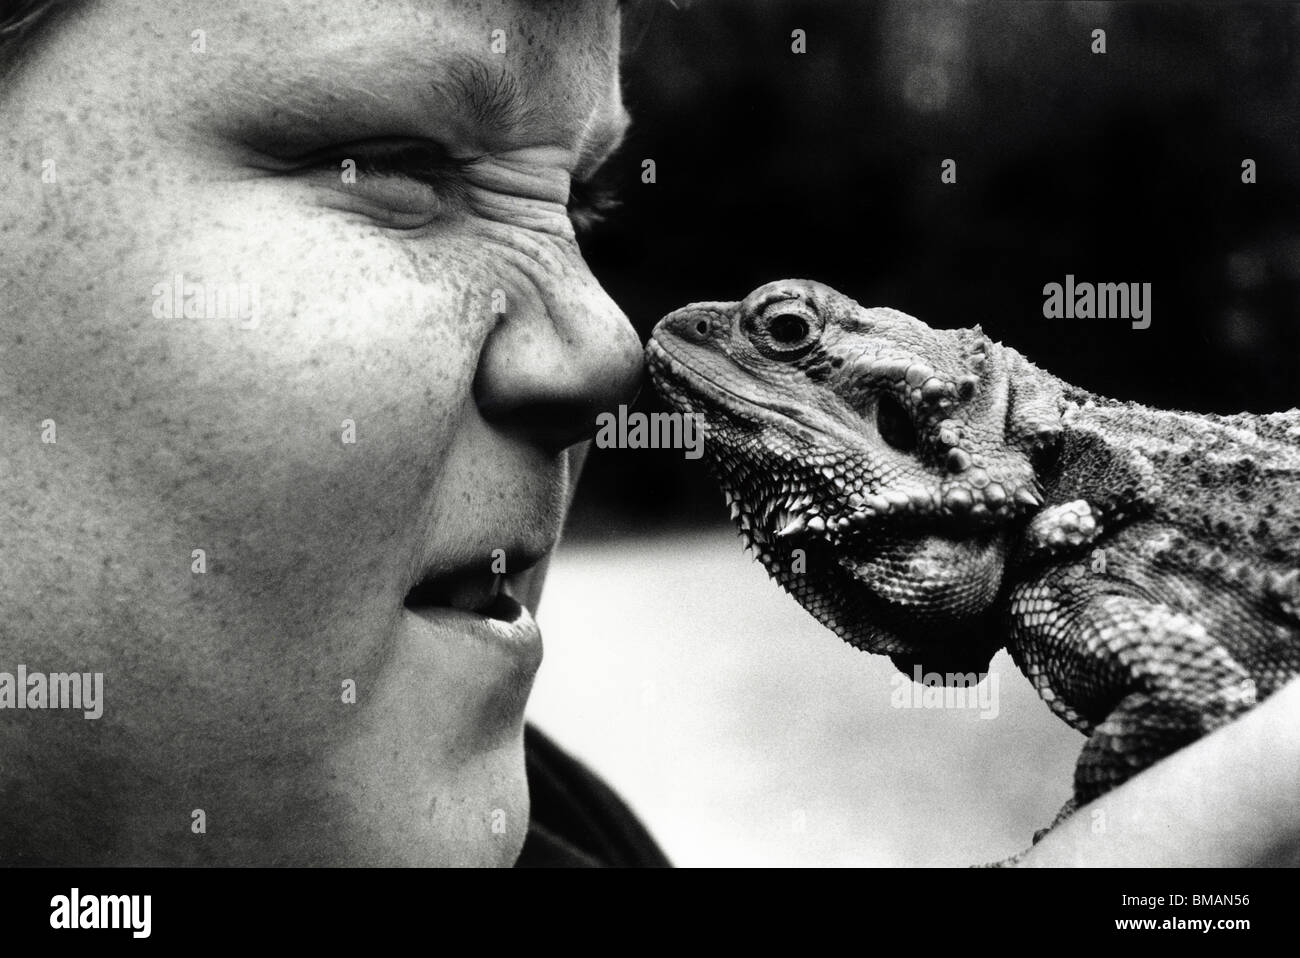 Un ragazzino con lentiggini, naso a naso con un australiano barbuto dragon lizard. Foto Stock